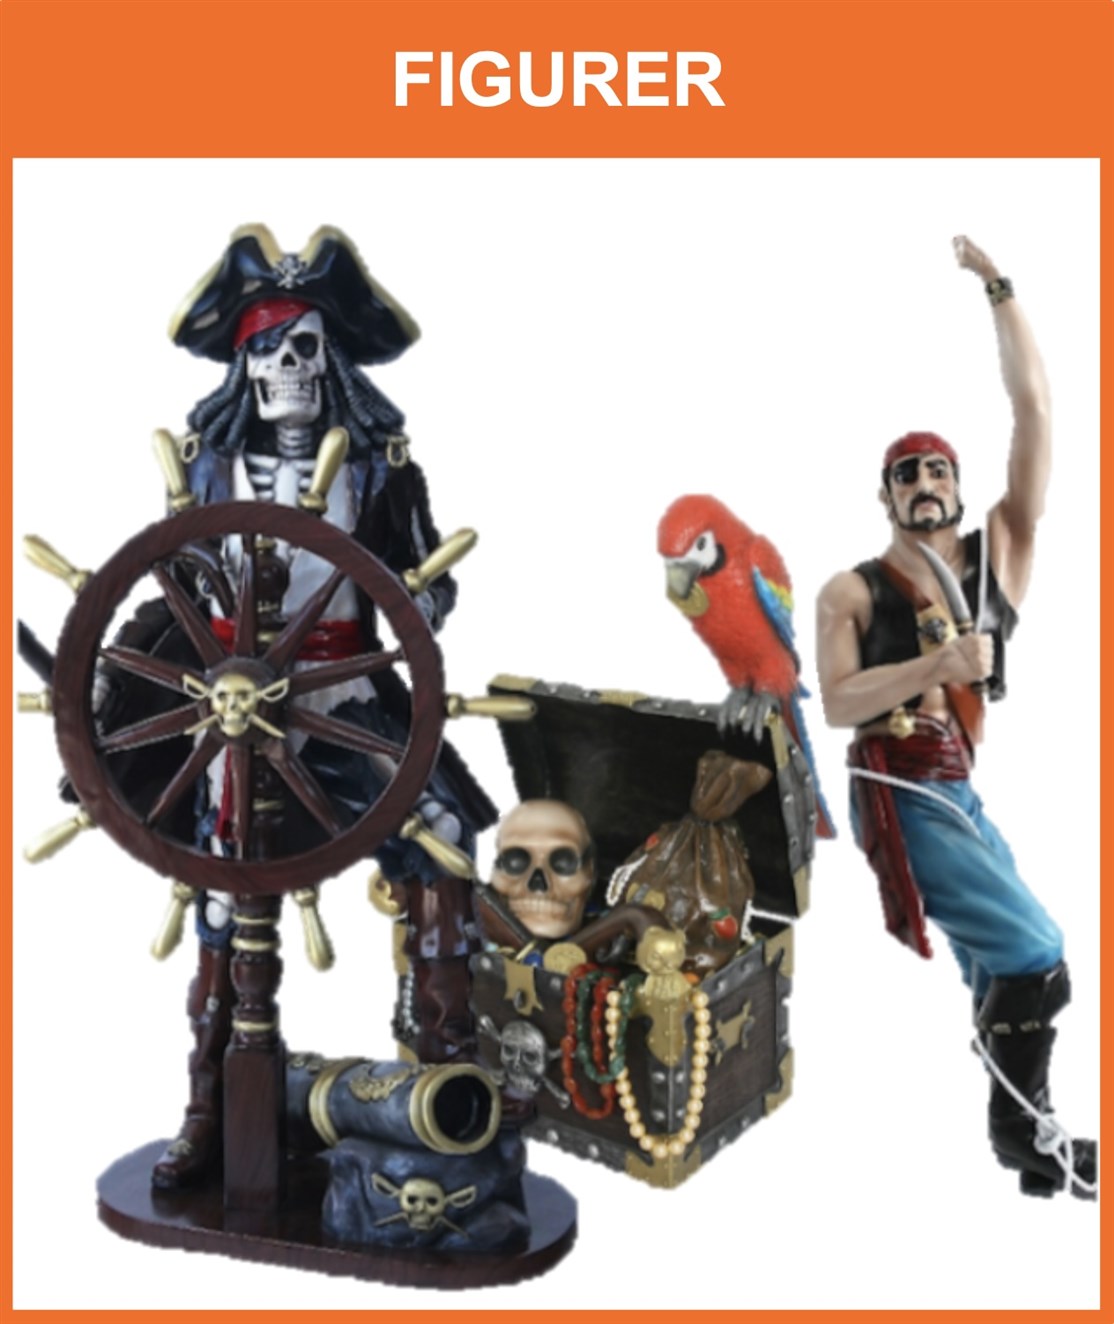 Livagtig sørøver & pirat figurer i naturlig størrelse
*